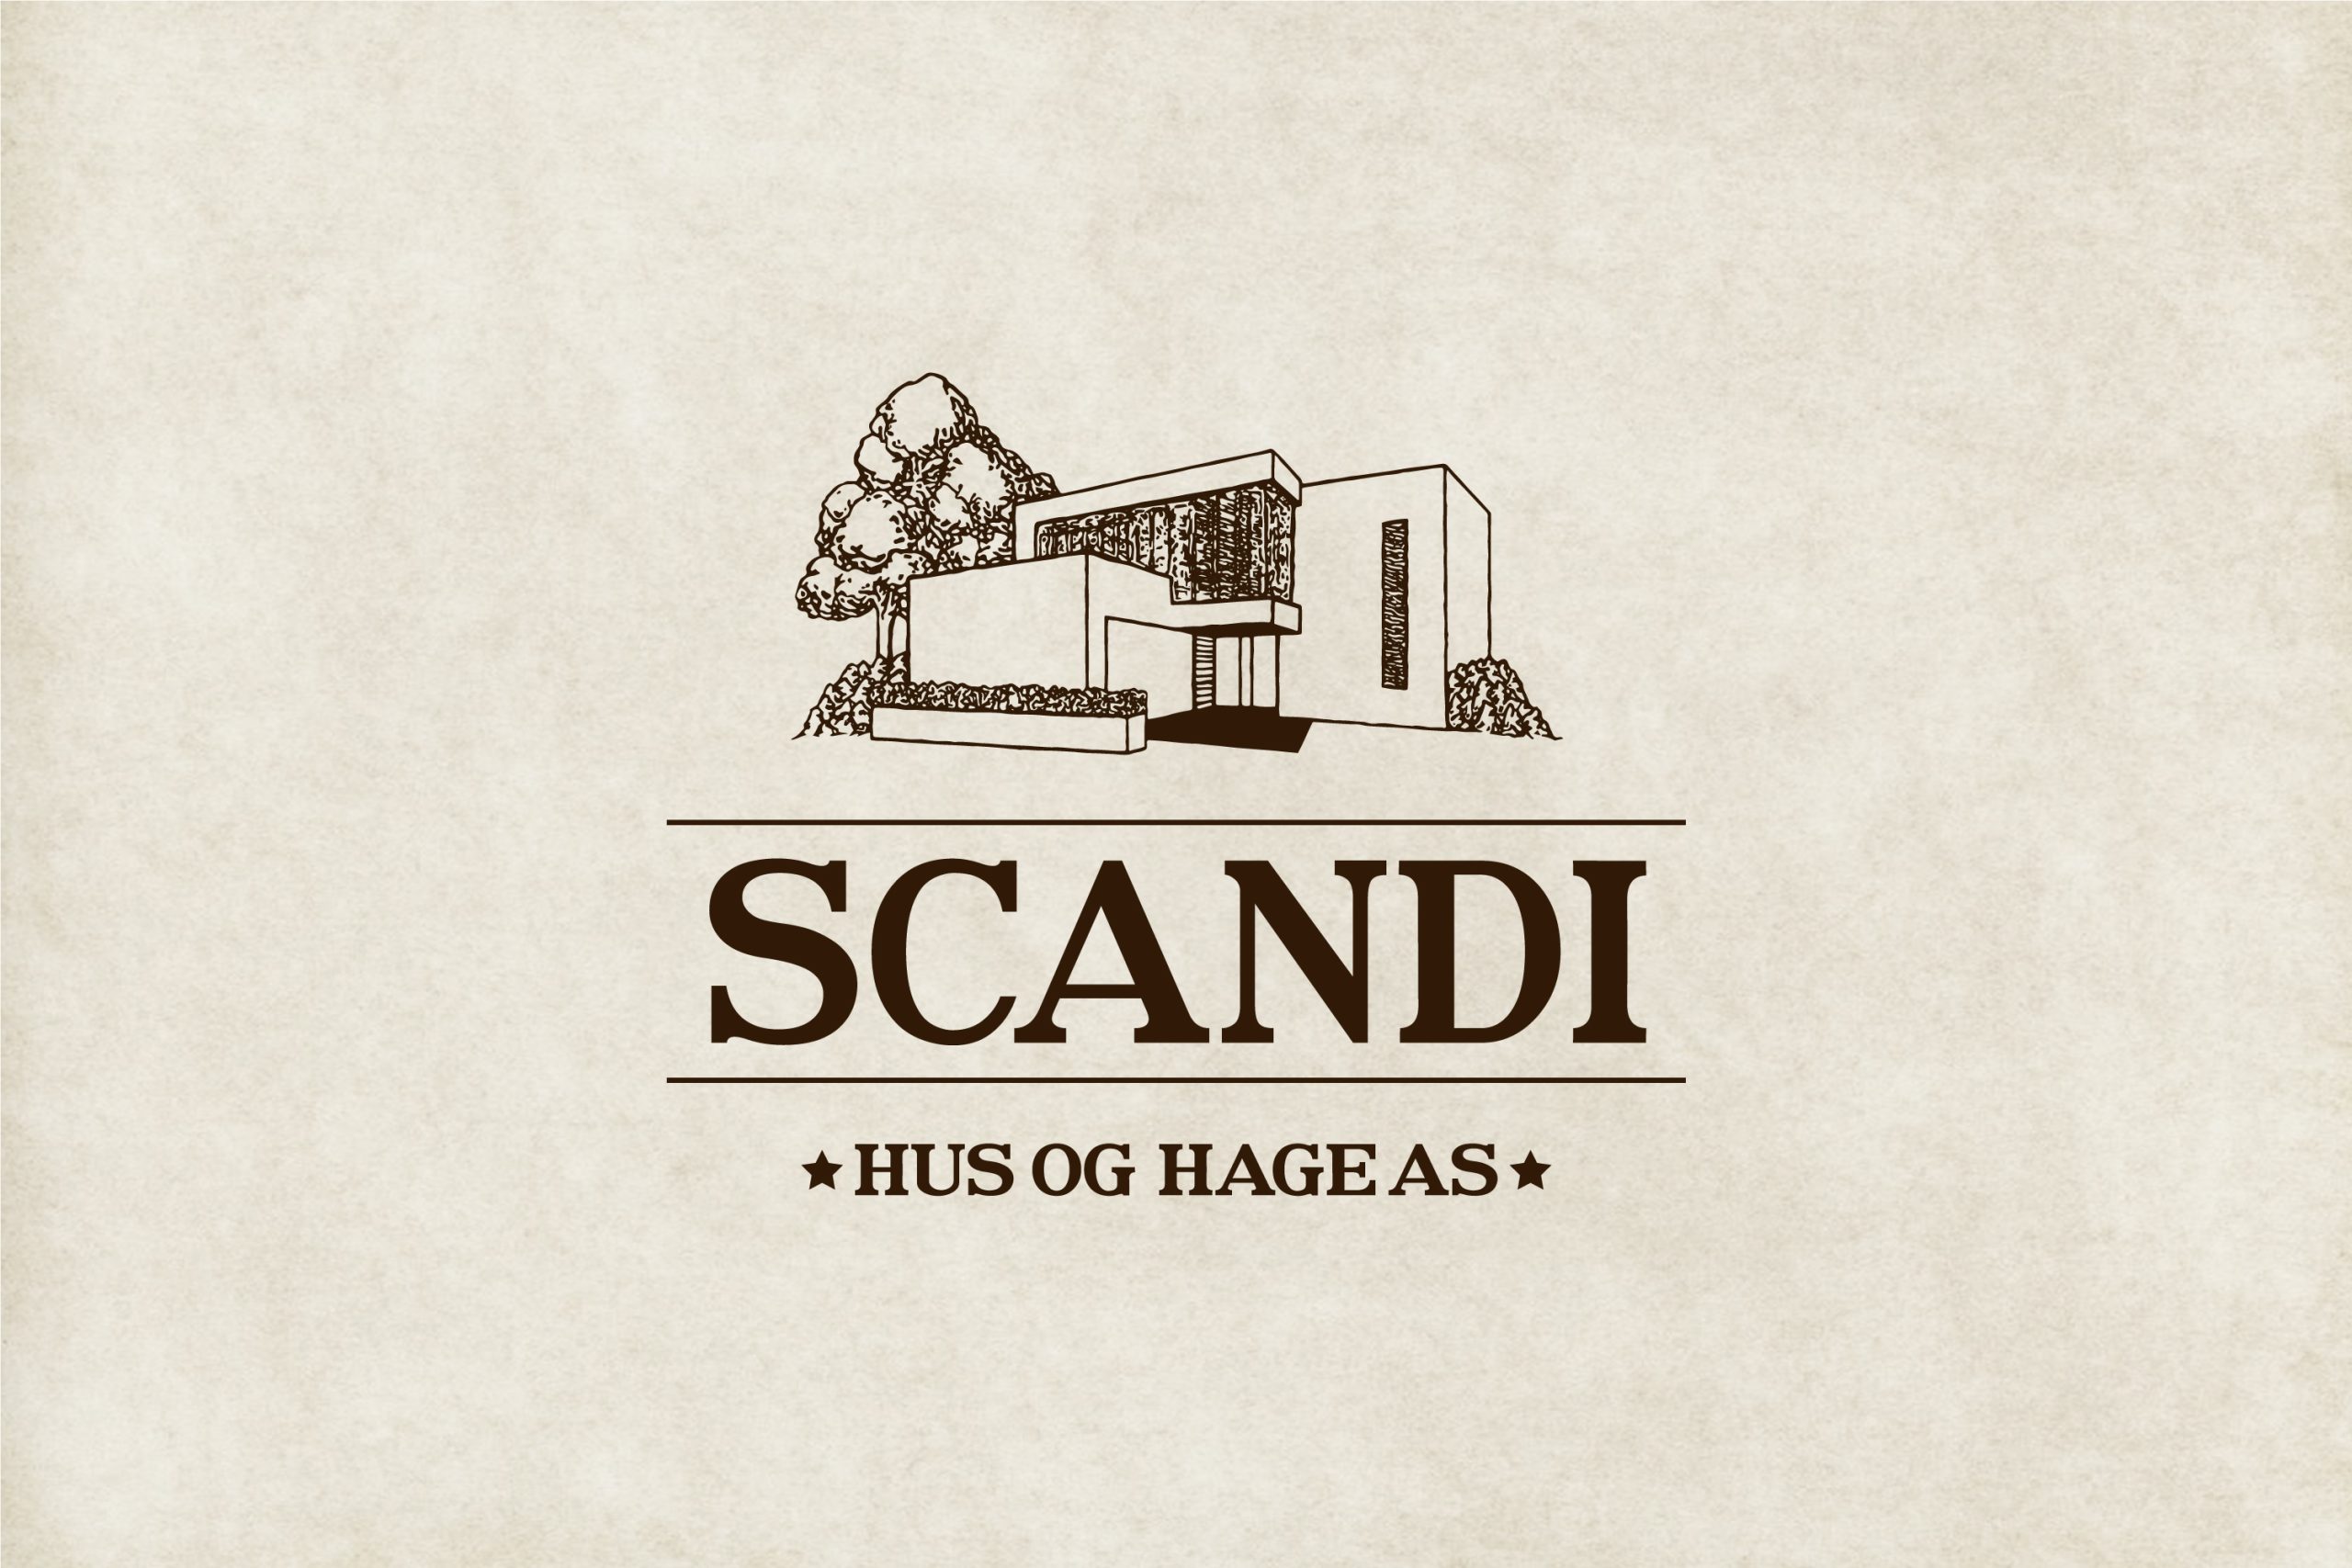 Scandi Hus og Hage